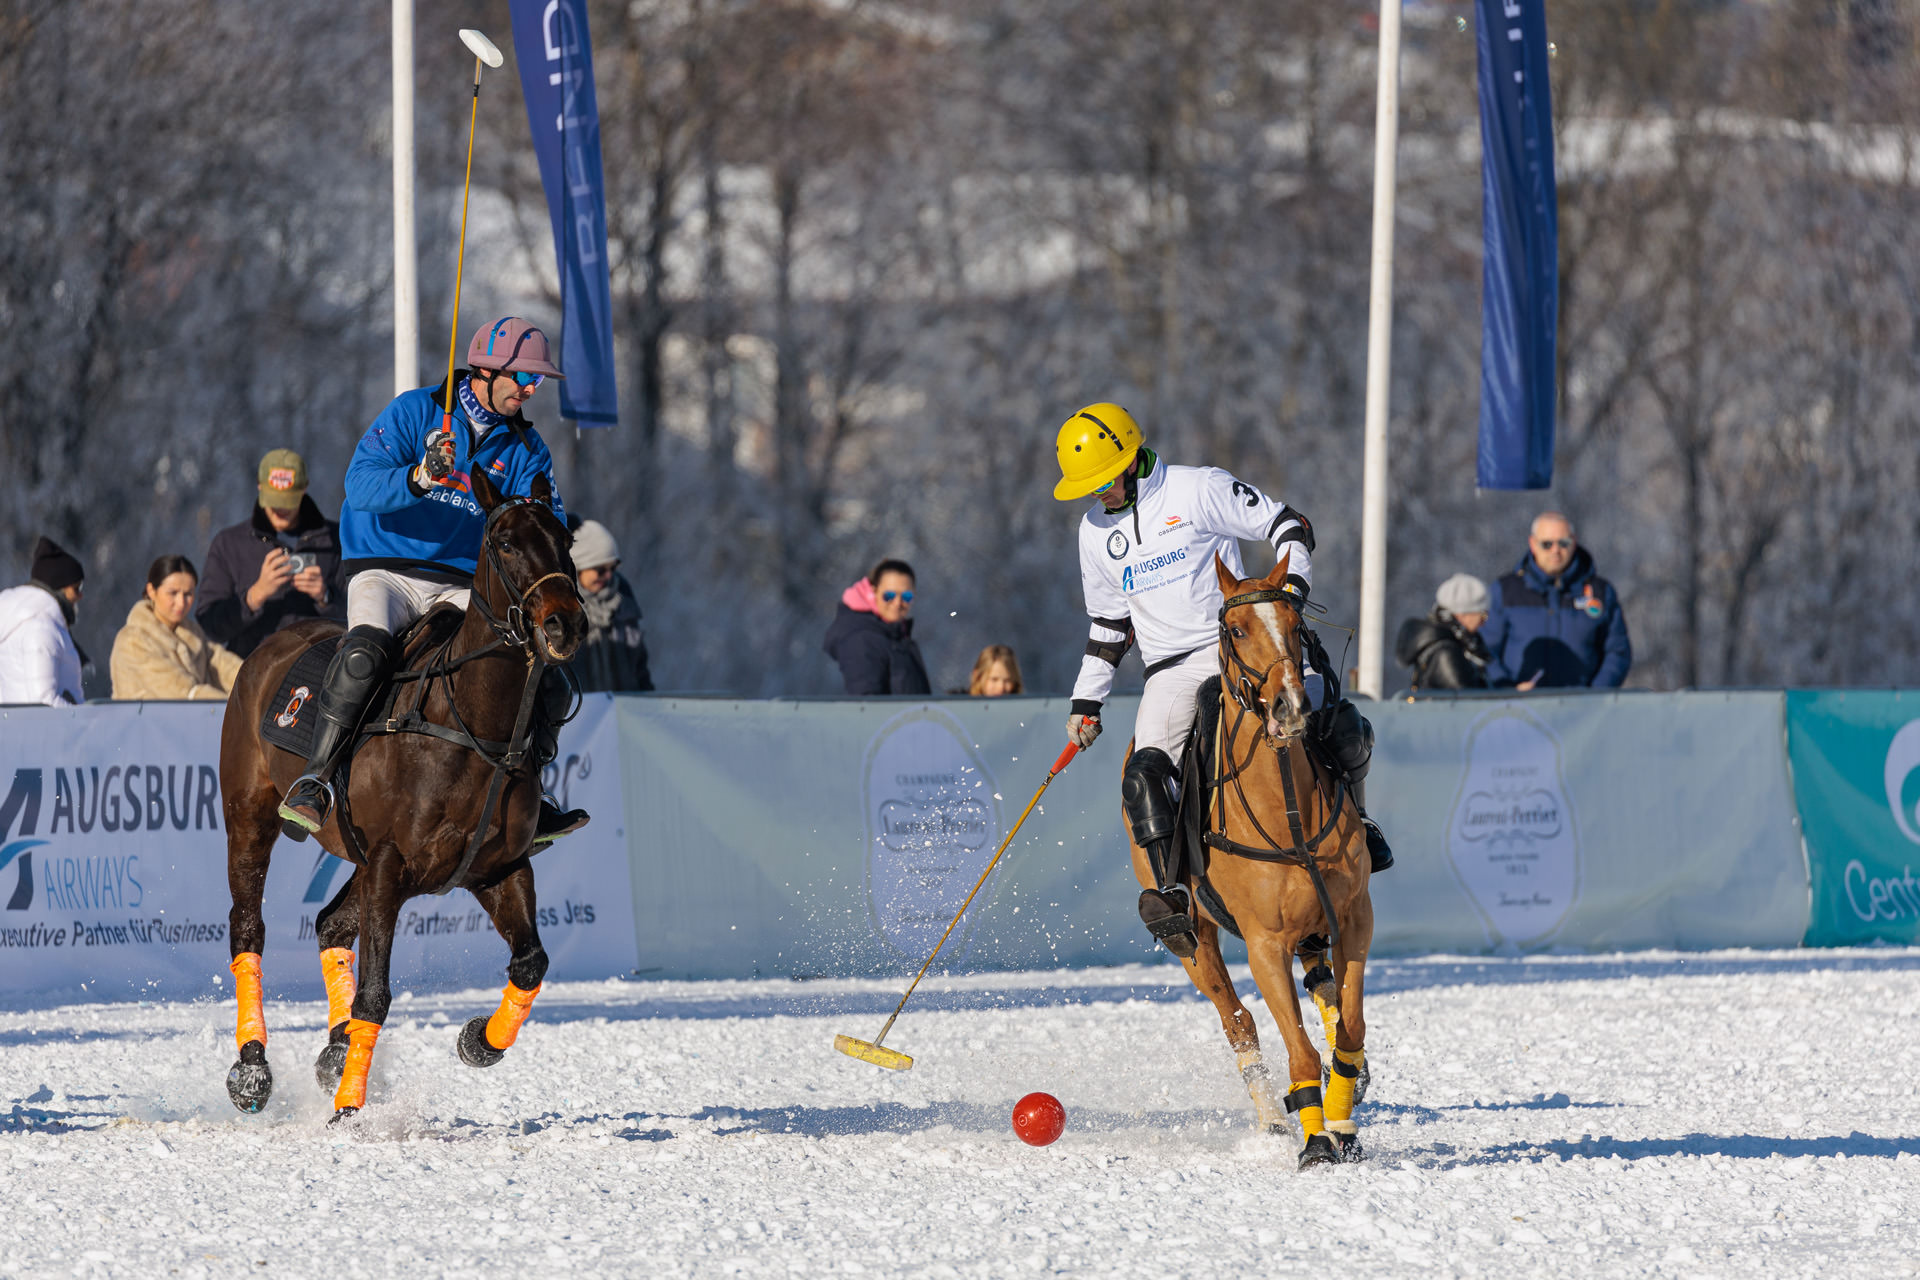 Bendura Bank Snow Polo World Cup